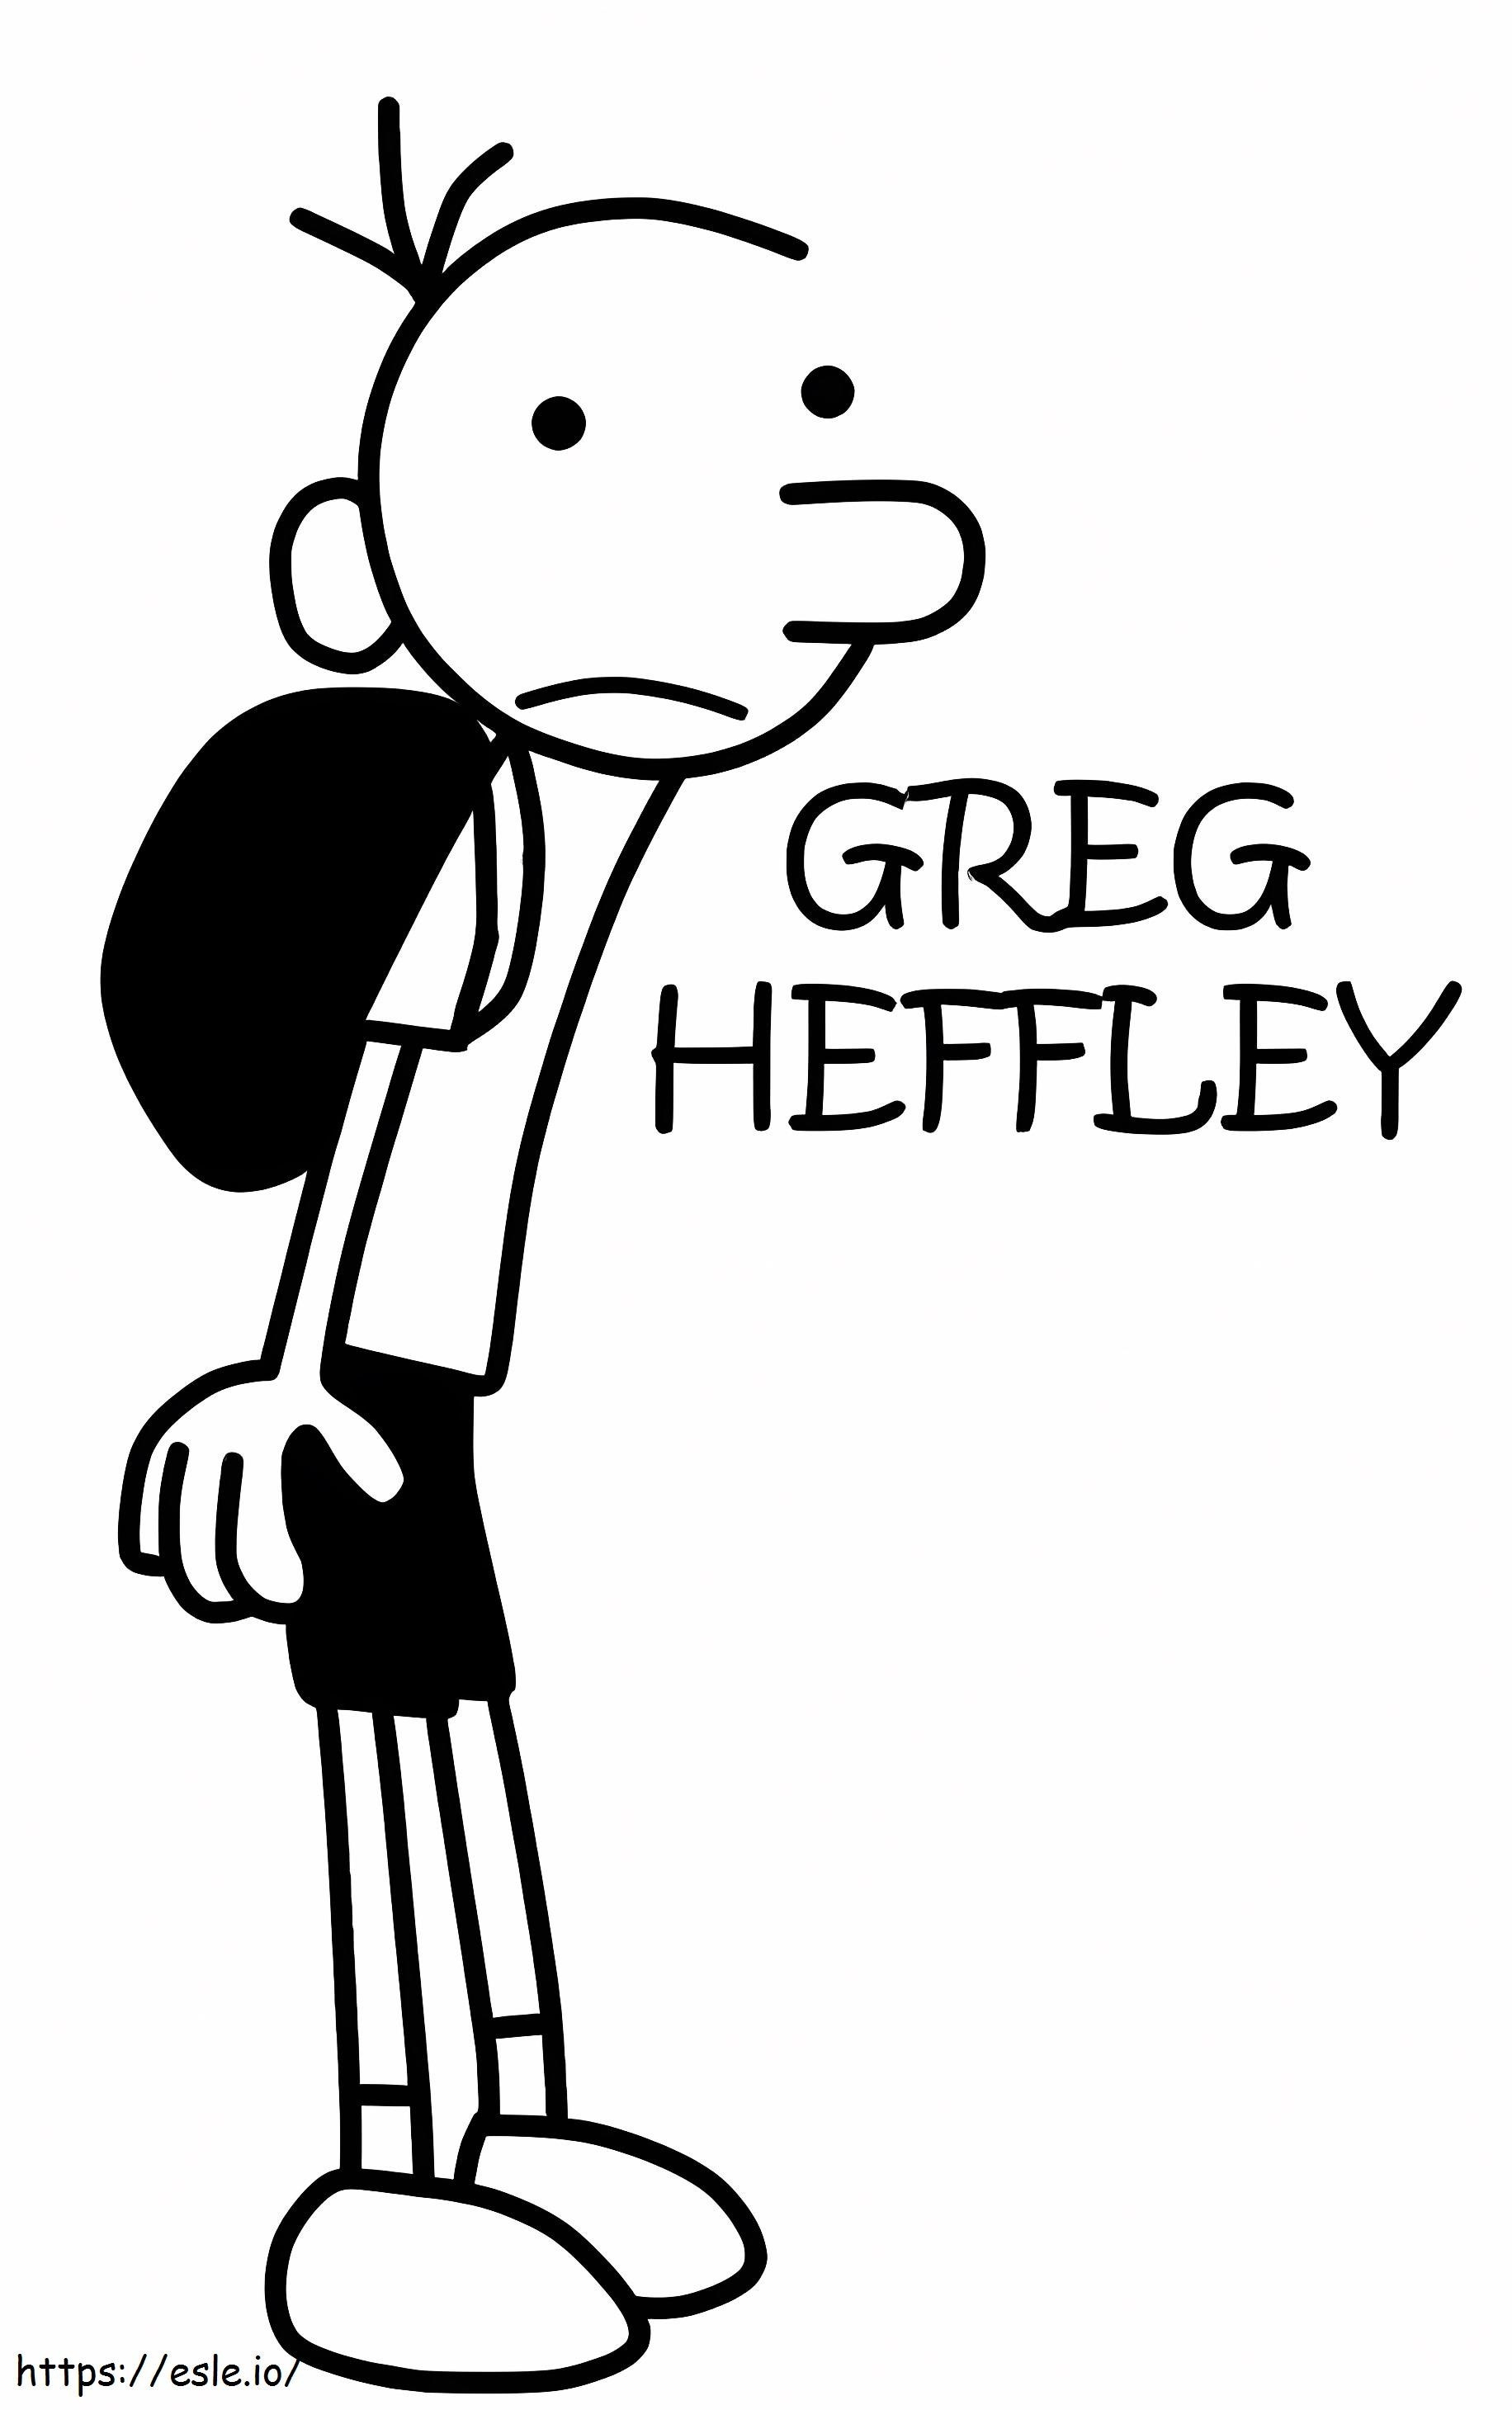 Greg Heffley para colorear